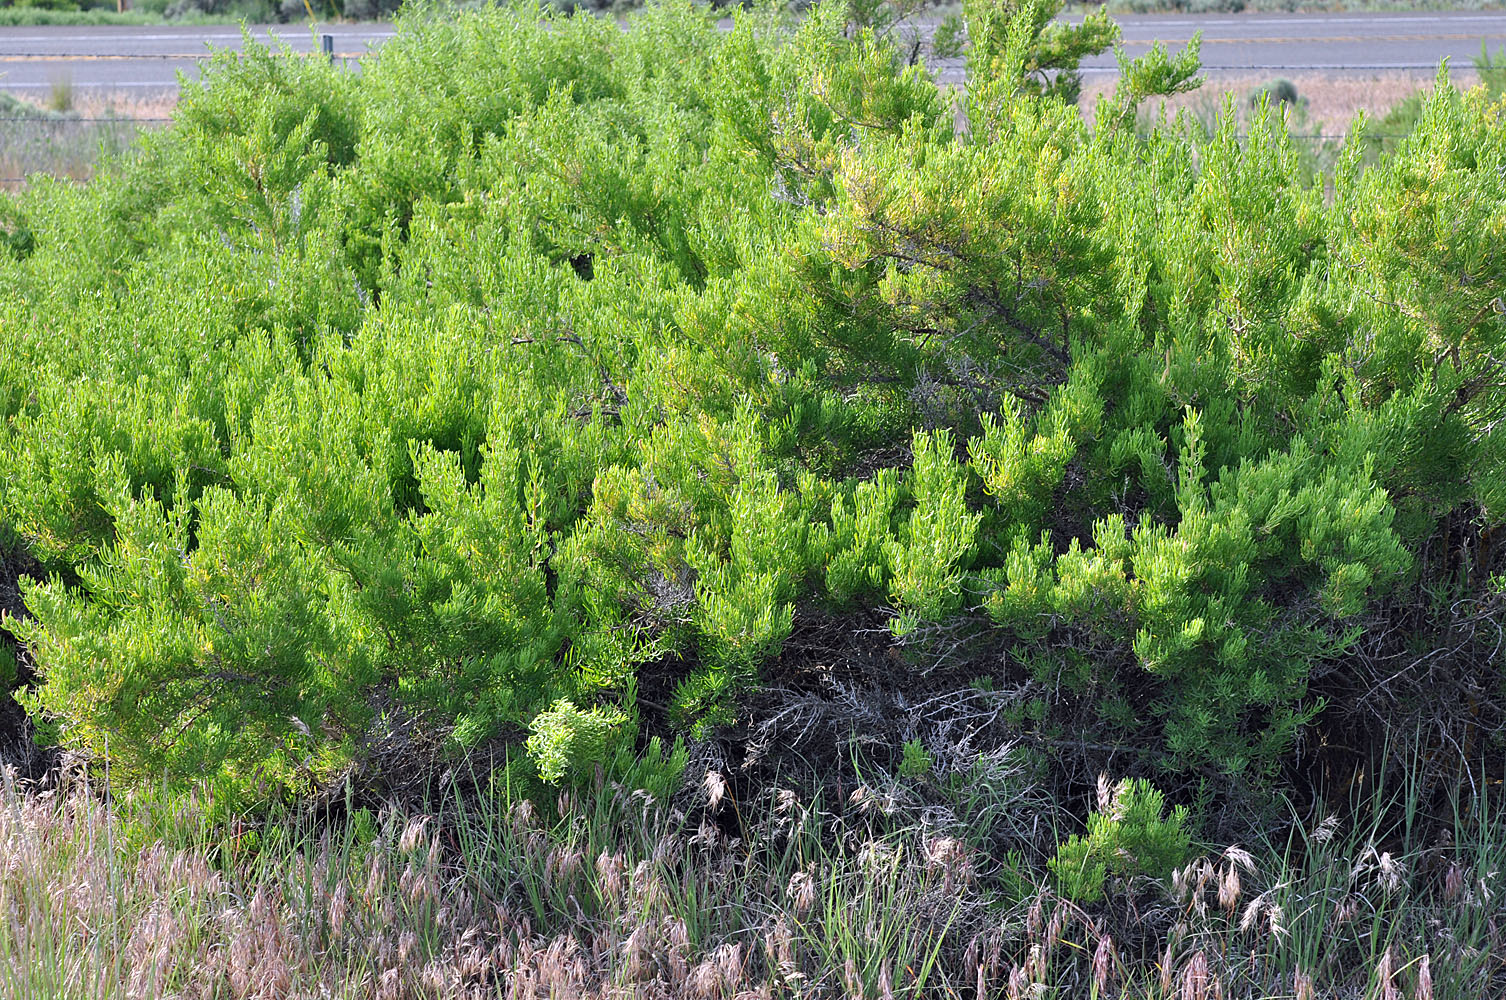 Flora of Eastern Washington Image: Sarcobatus vermiculatus